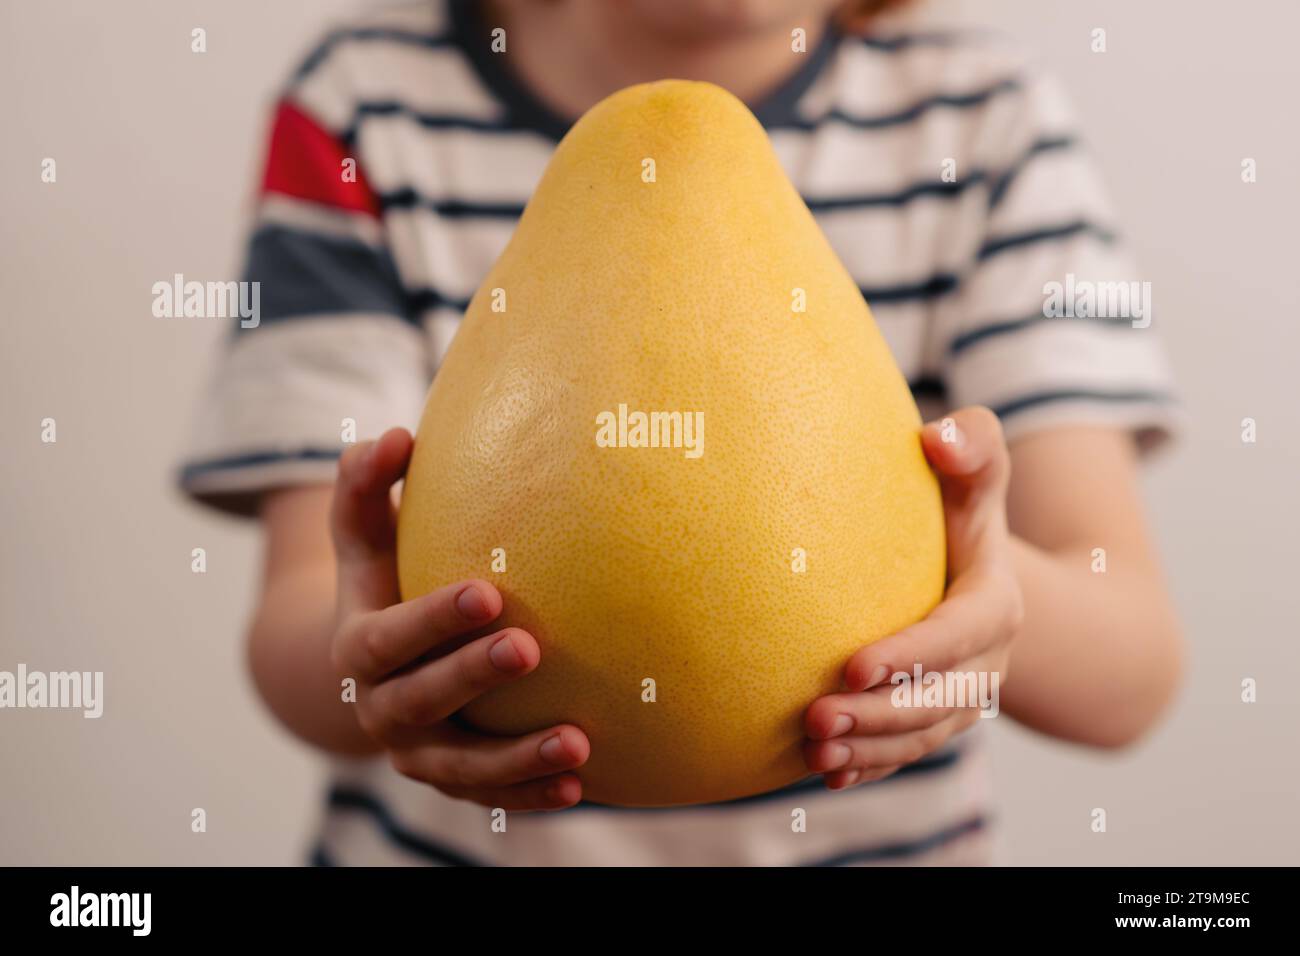 Delizia ricca di nutrienti: Un bambino esplora le meraviglie di un pomelo giallo considerevole, promuovendo i benefici per la salute derivanti dall'incorporazione della frutta nella vita quotidiana Foto Stock